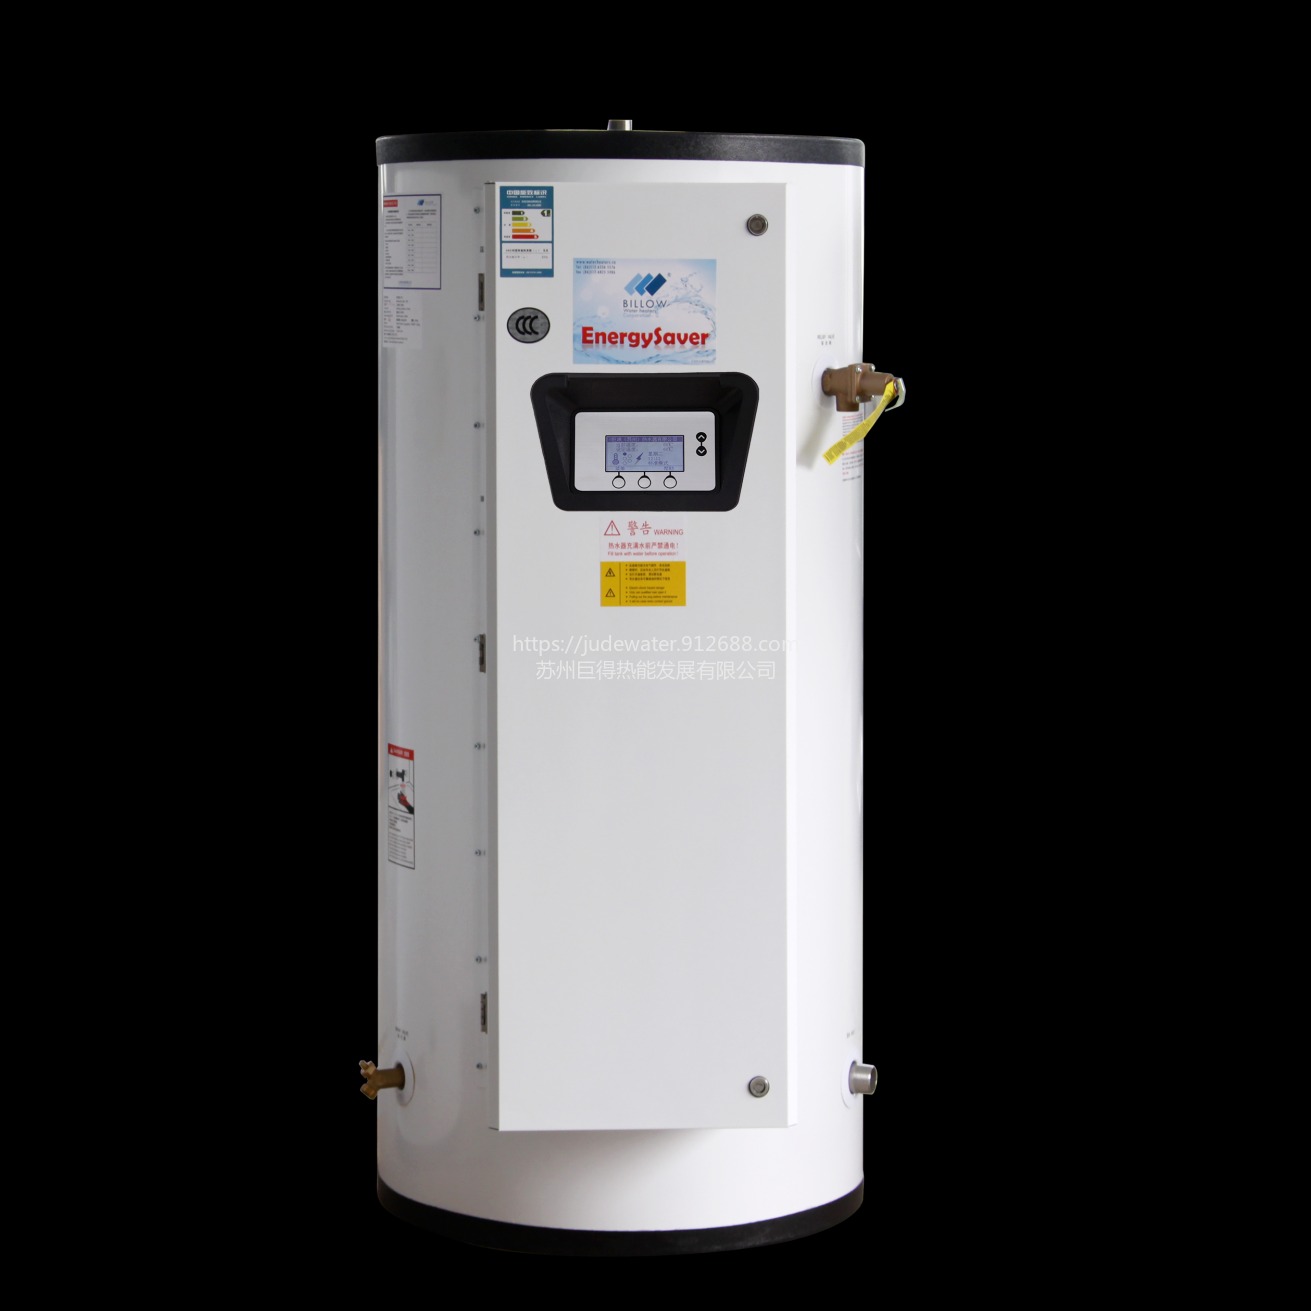 苏州巨浪巨得智能型商用电热水炉 BSE-80-90 容积300L 功率90KW 1.1MPa 3C认证 1级能效